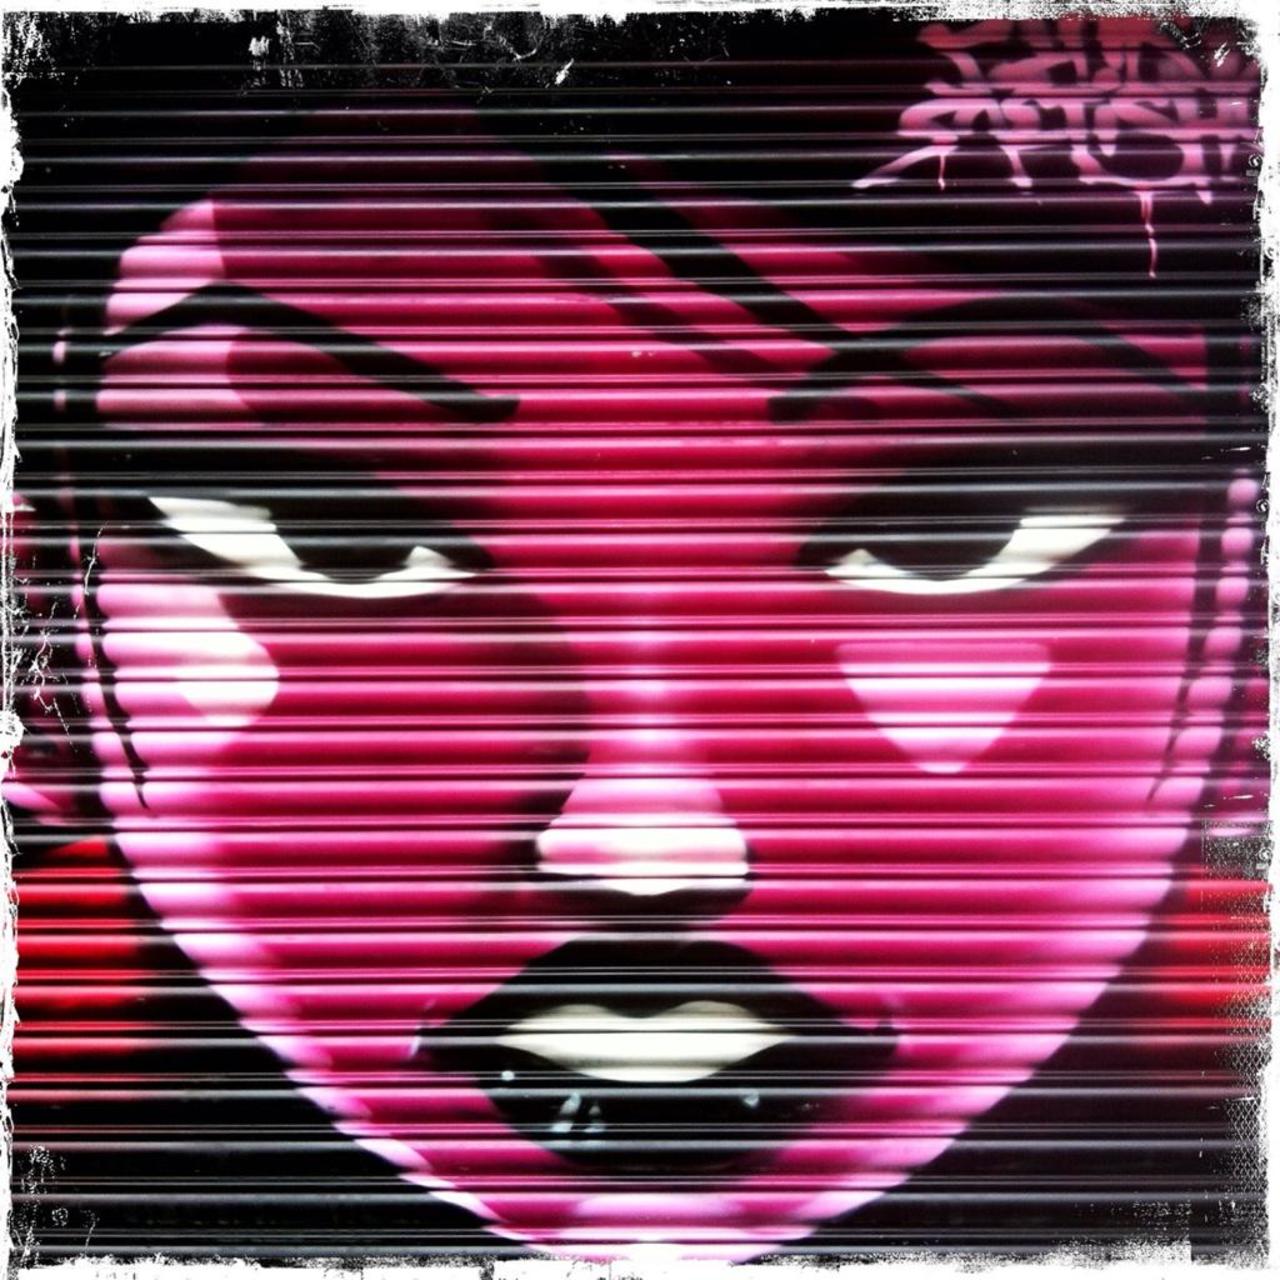 Lovely shutter work in @redchurchstreet #art #streetart #graffiti http://t.co/IrrvBEKZFs